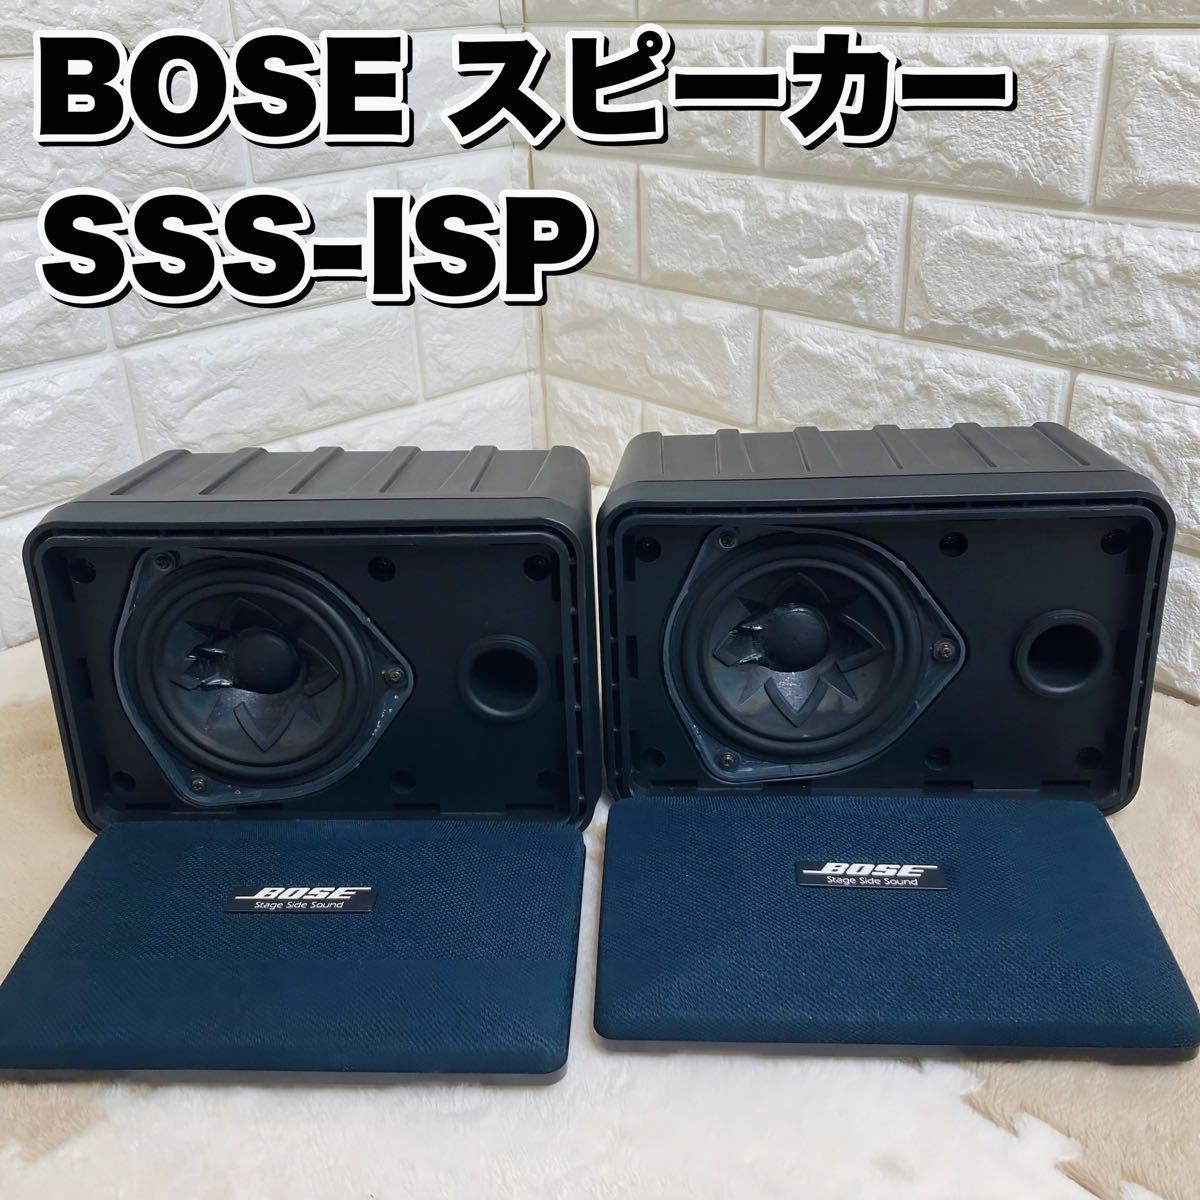 良品】 BOSE ボーズ スピーカー SSS-ISP ペア シリアル連番 音響機器